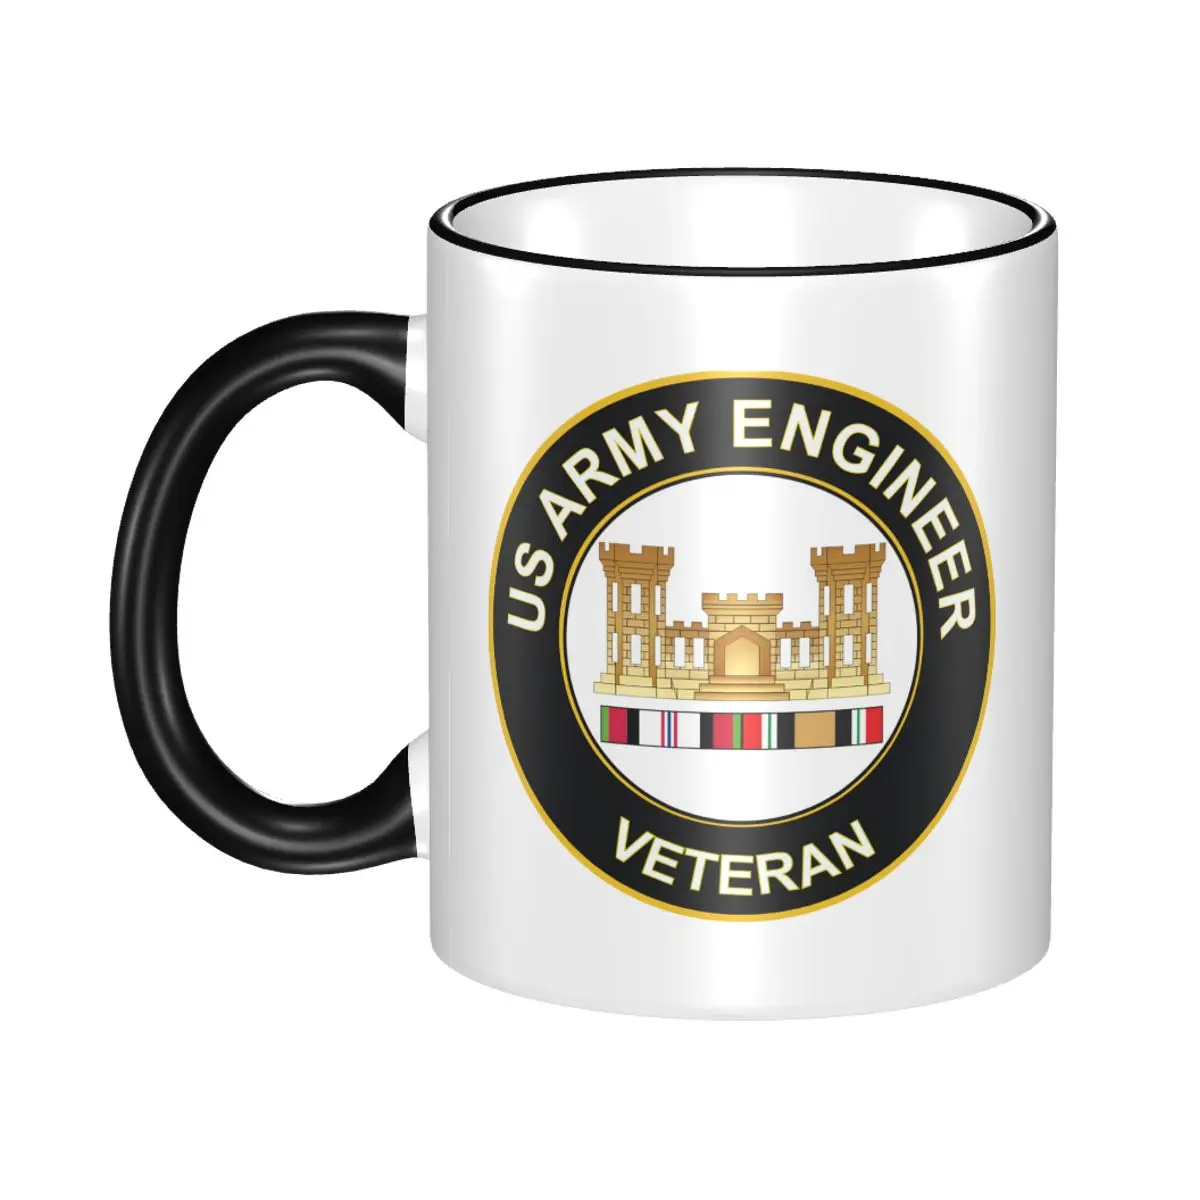 

Керамические кофейные кружки, чайная чашка, армейский инженер, Афганистан и Ирак, наклейка, забавные и уникальные керамические чашки, кружка